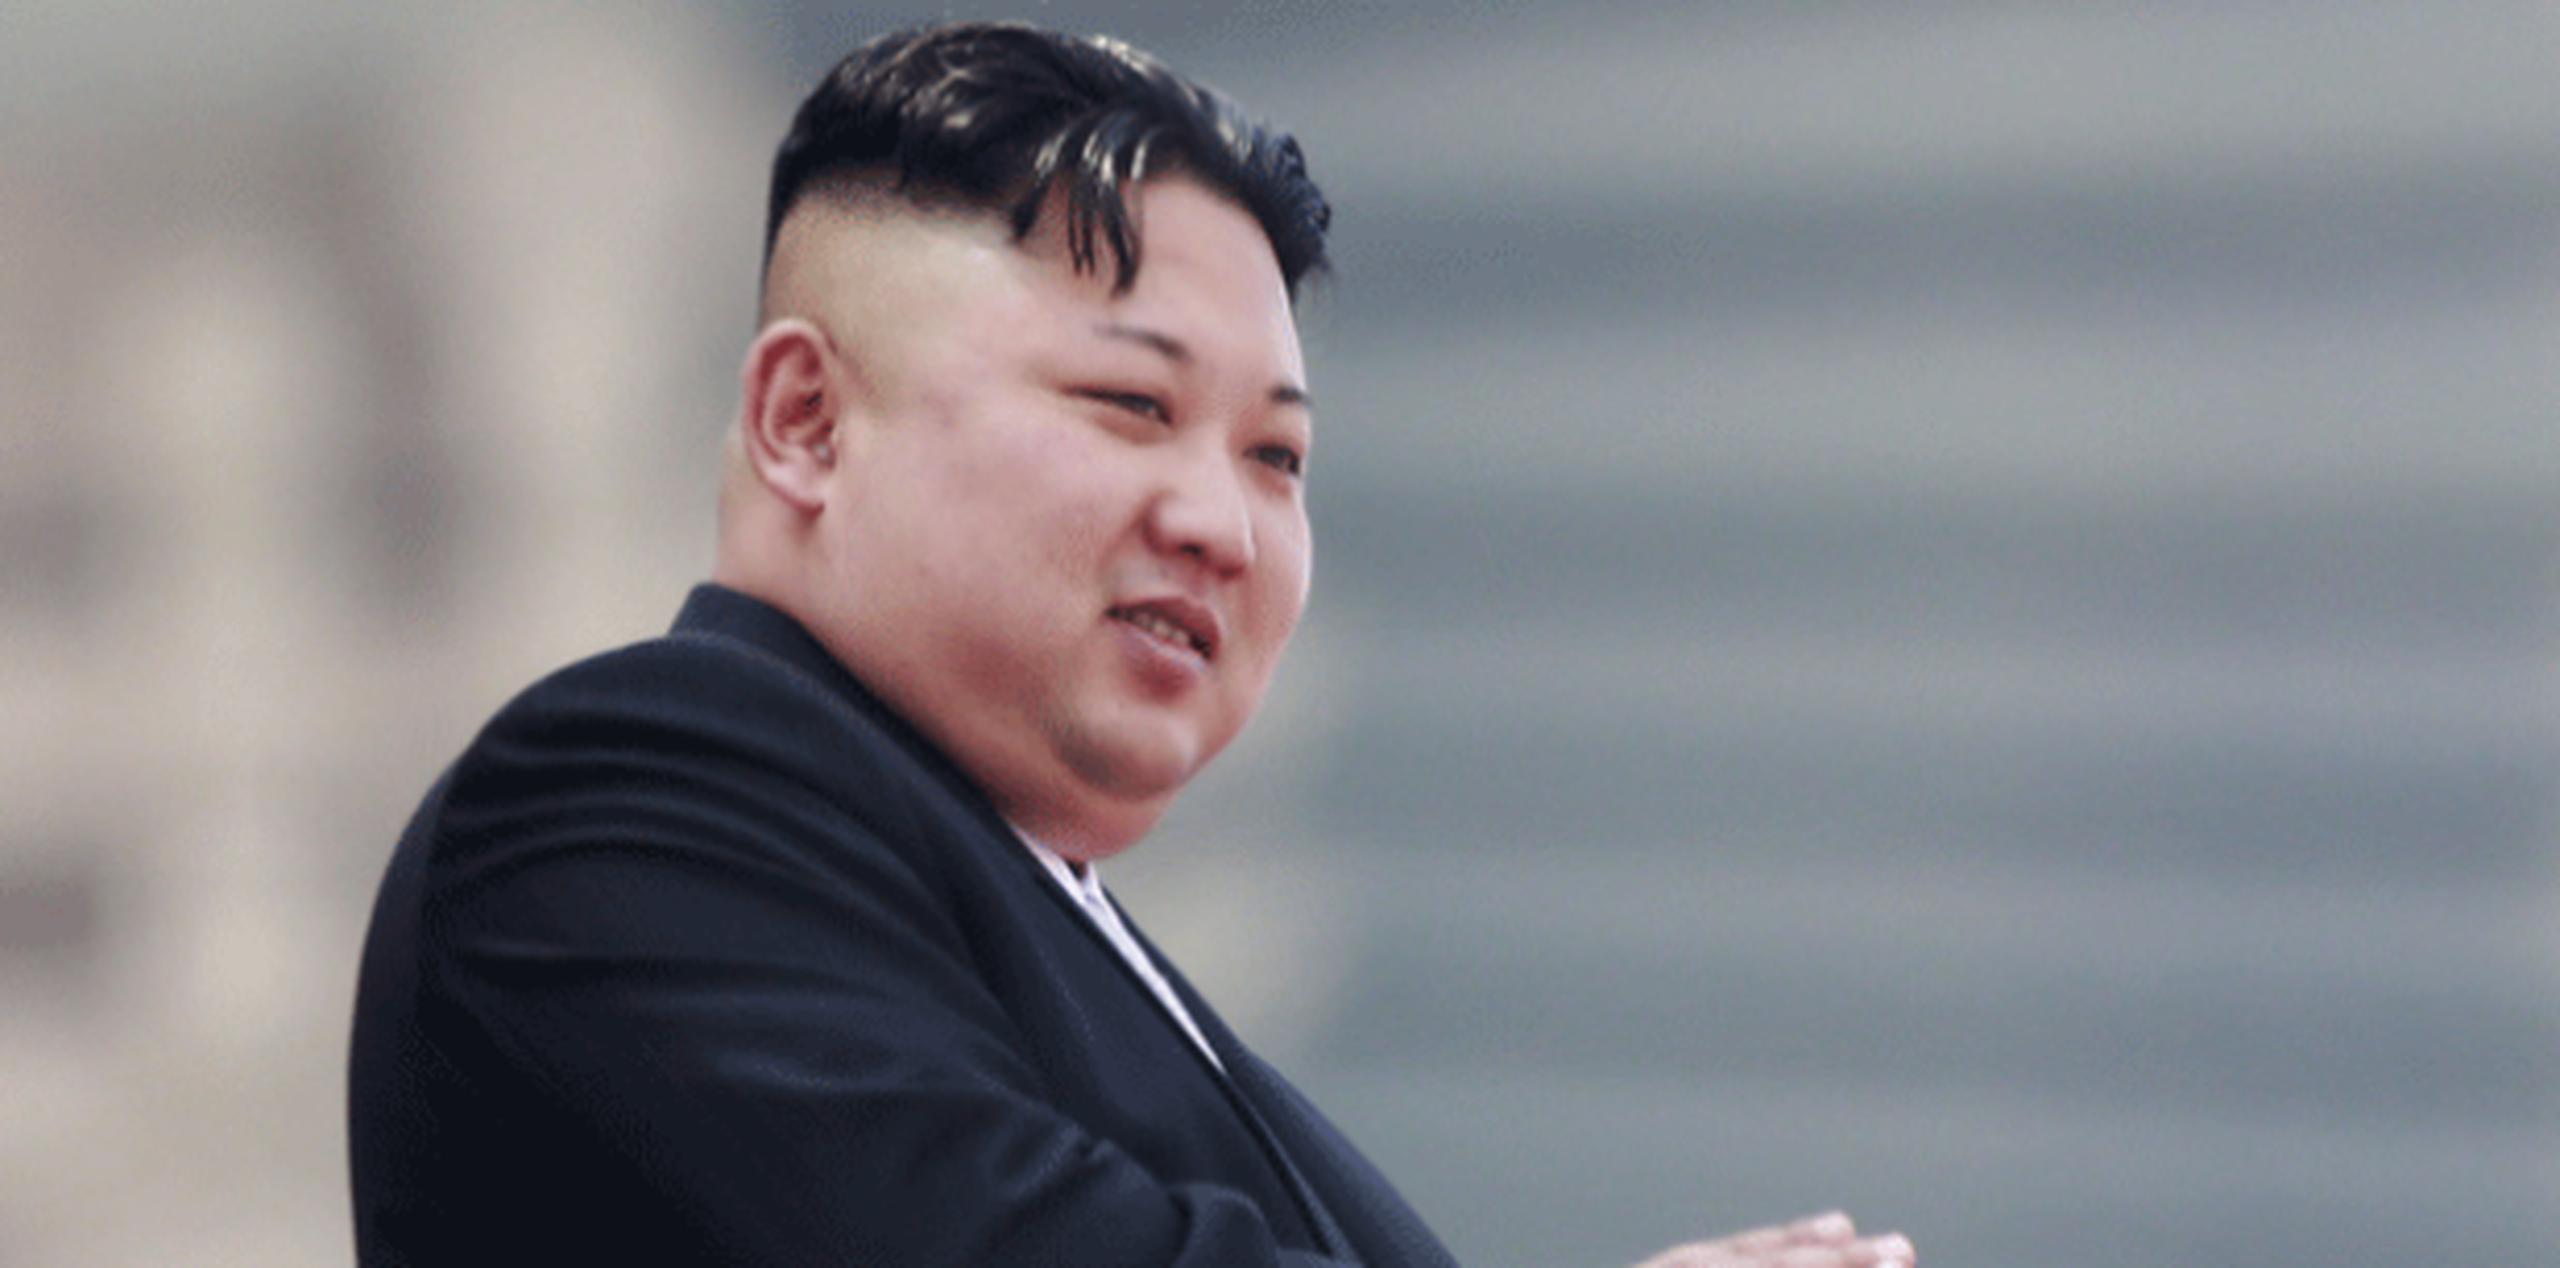 Entre los planes confidenciales que supuestamente fueron robados, se dice que están los ataques quirúrgicos por parte de Seúl y Washington para eliminar al líder norcoreano Kim Jong Un en caso de que sea inminente o se dé inicio a una crisis. (Archivo)